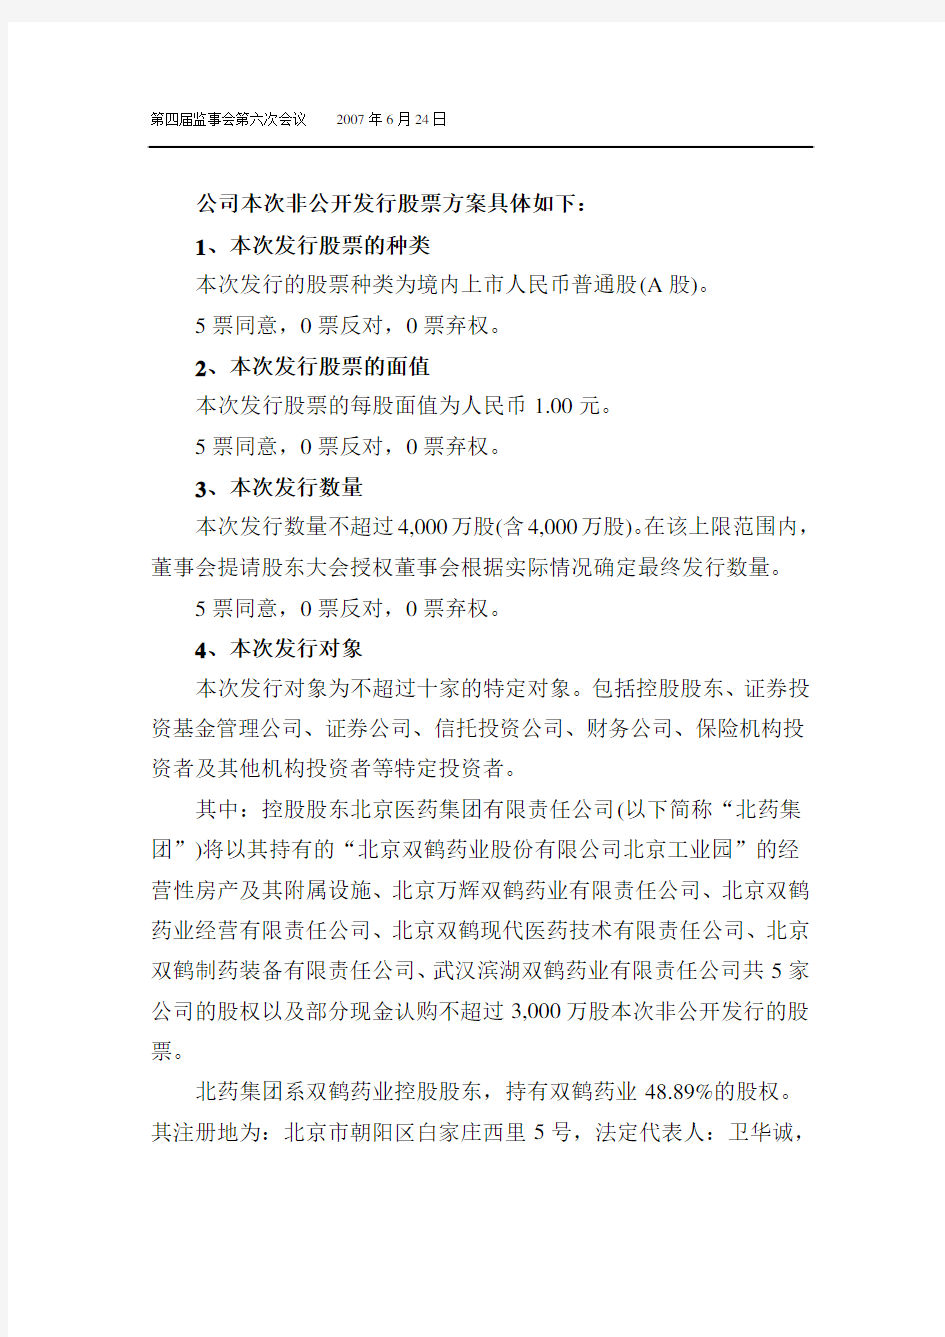 北京双鹤药业股份有限公司第四届监事会第六次会议决议公告